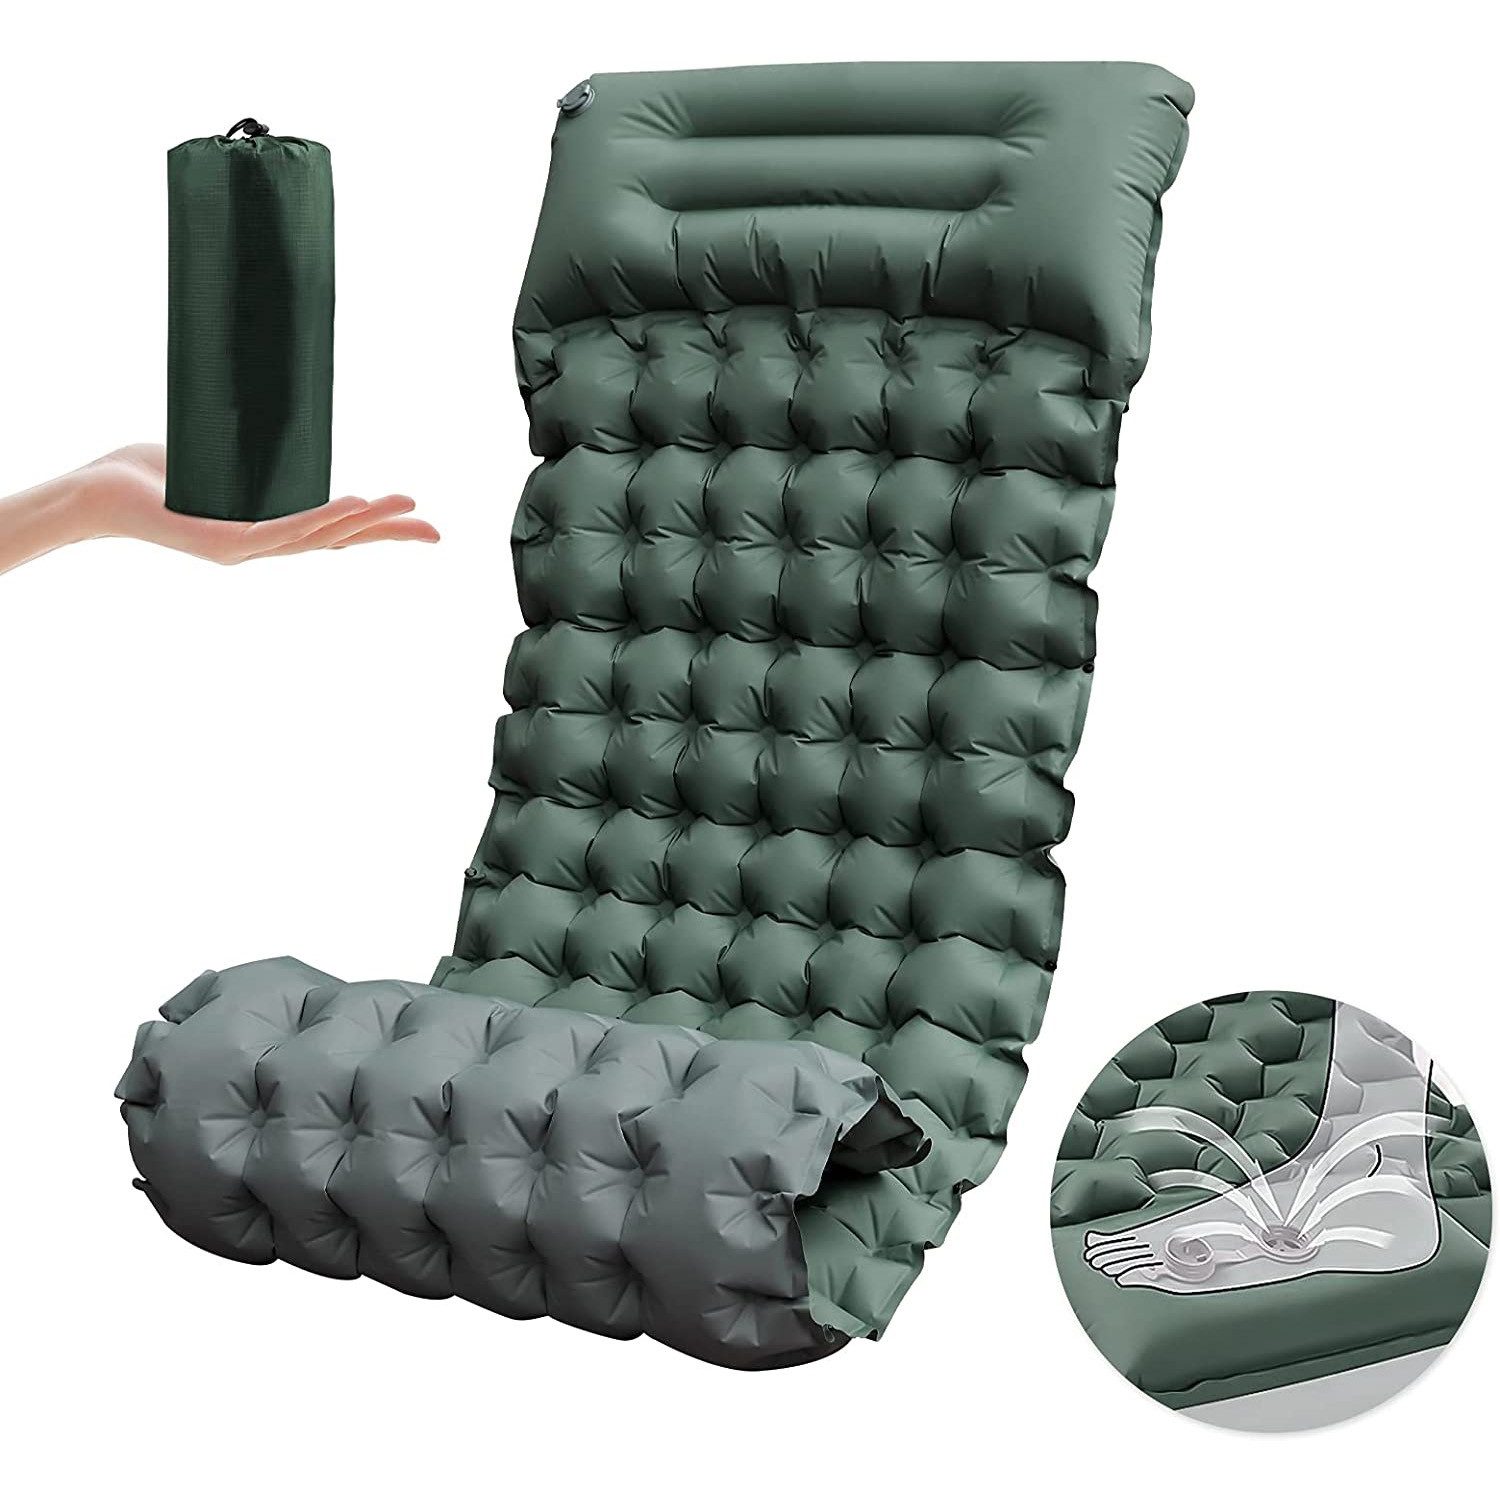 Bedee Isomatte Selbstaufblasende Luftmatratze Schlafmatten für Camping, (Erschleißfest/wasserabweisend/Reißfestigkeit), 200 x 67 x 10cmcm Ultraleicht Schlafmatte